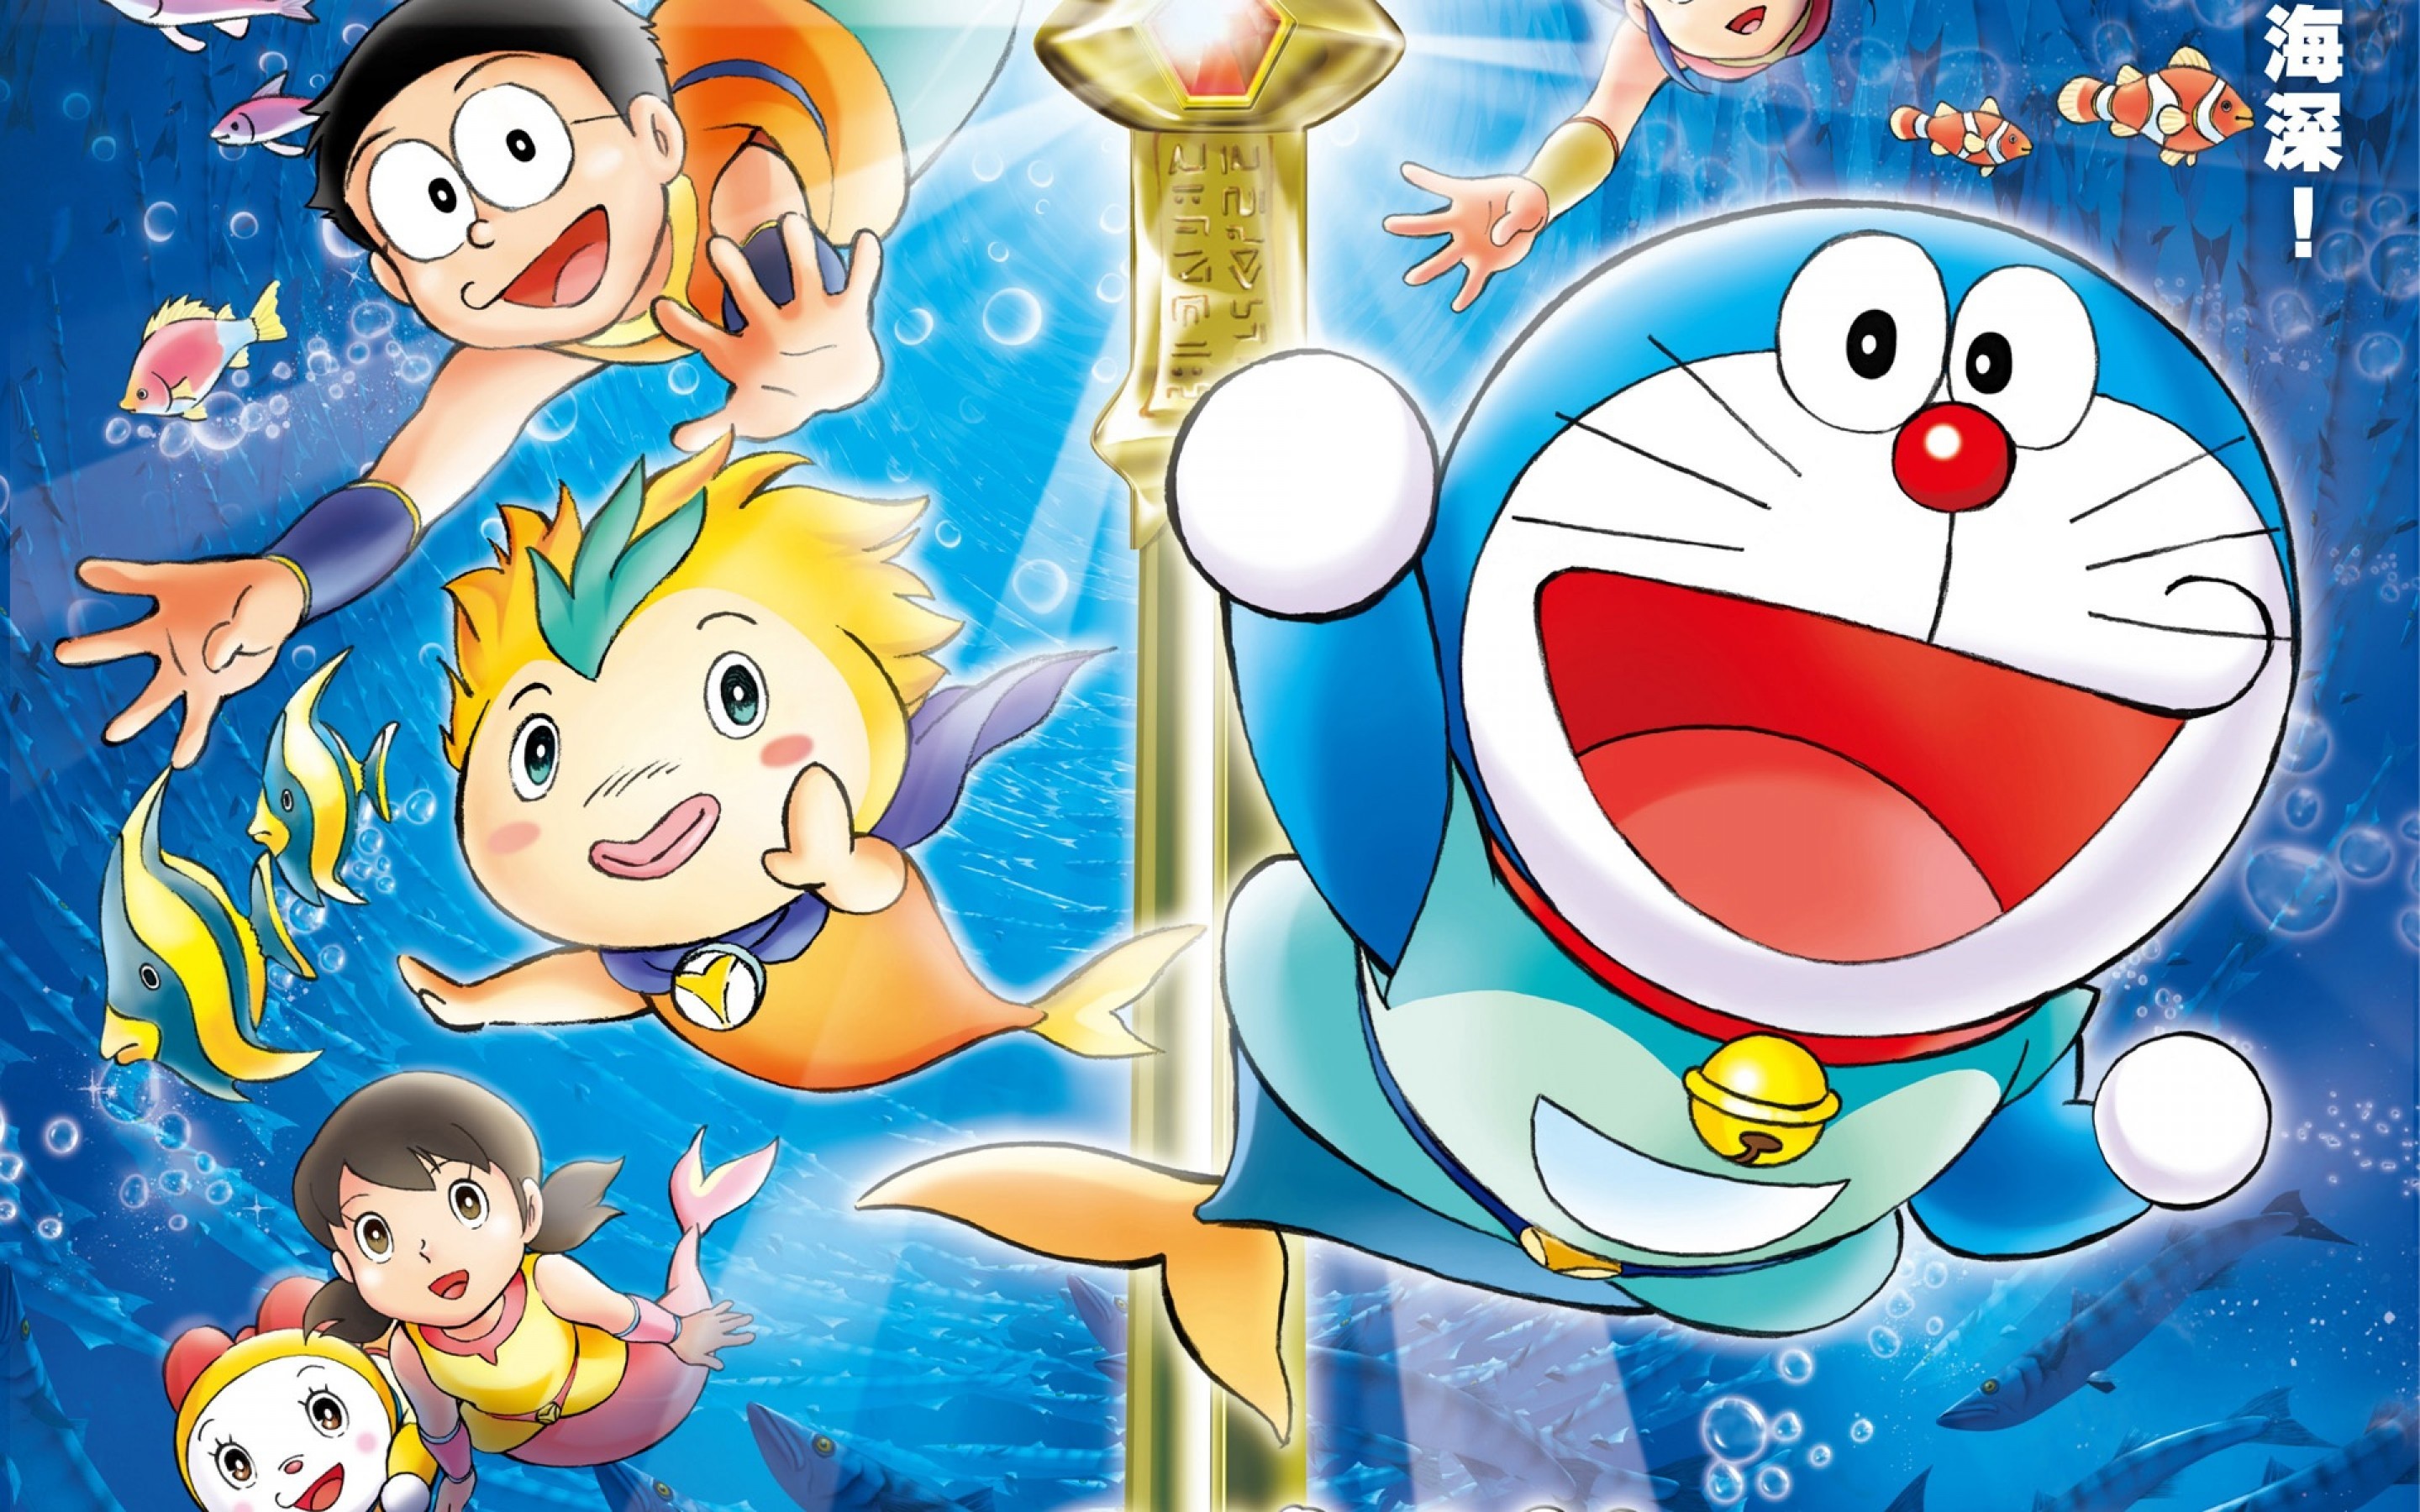 Doraemon: Chào mừng bạn đến với thế giới của chú mèo máy Doraemon! Bạn đã bao giờ tò mò về cuộc phiêu lưu của Doraemon và Nobita chưa? Hãy xem hình ảnh liên quan đến Doraemon để khám phá thêm về câu chuyện đầy phép màu của họ nhé!